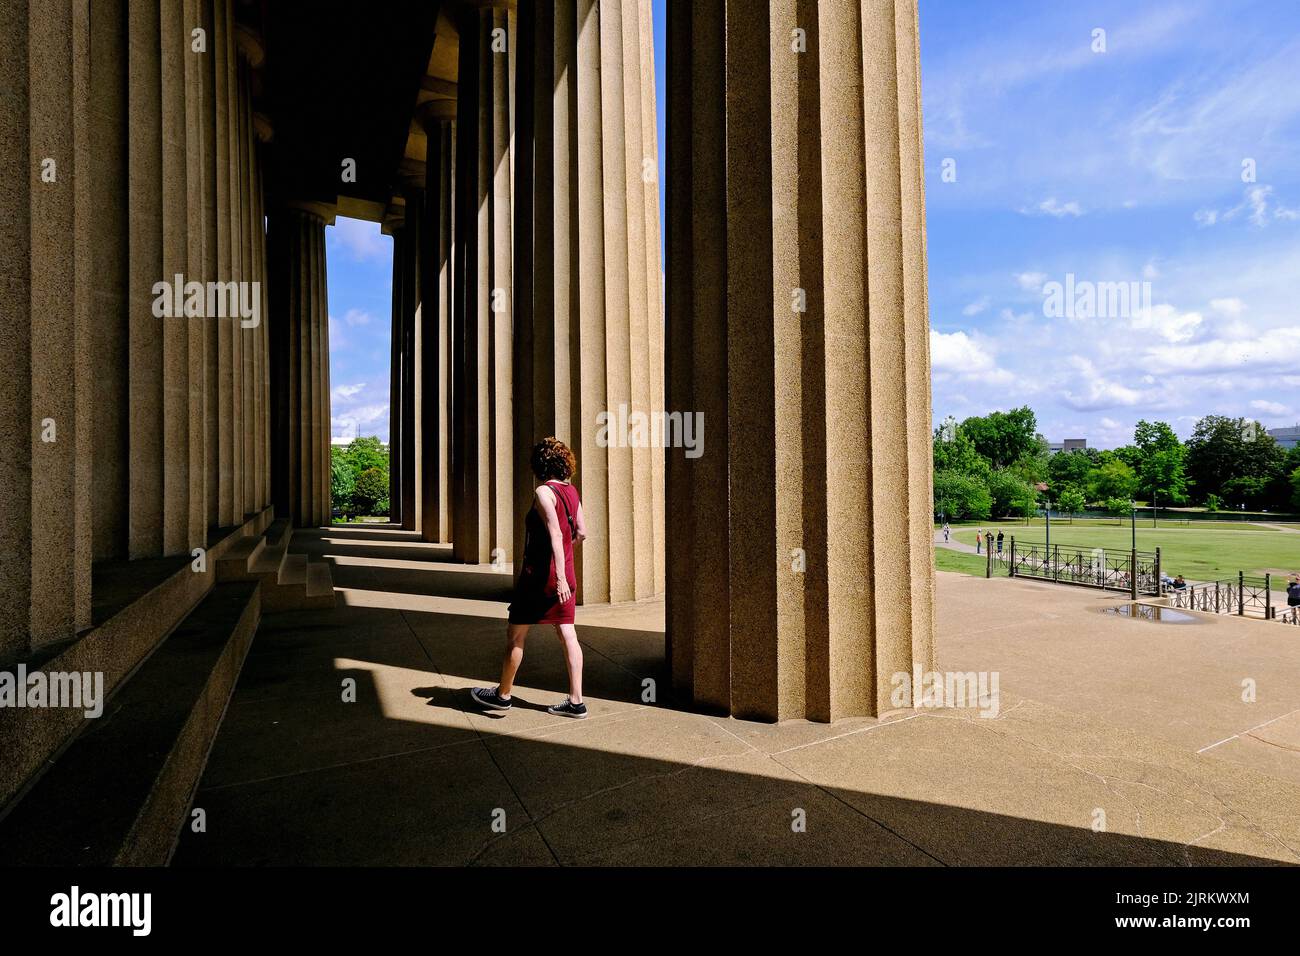 The Parthenon im Centennial Park; Nashville, Tennessee, Vereinigte Staaten von Amerika Stock Photo